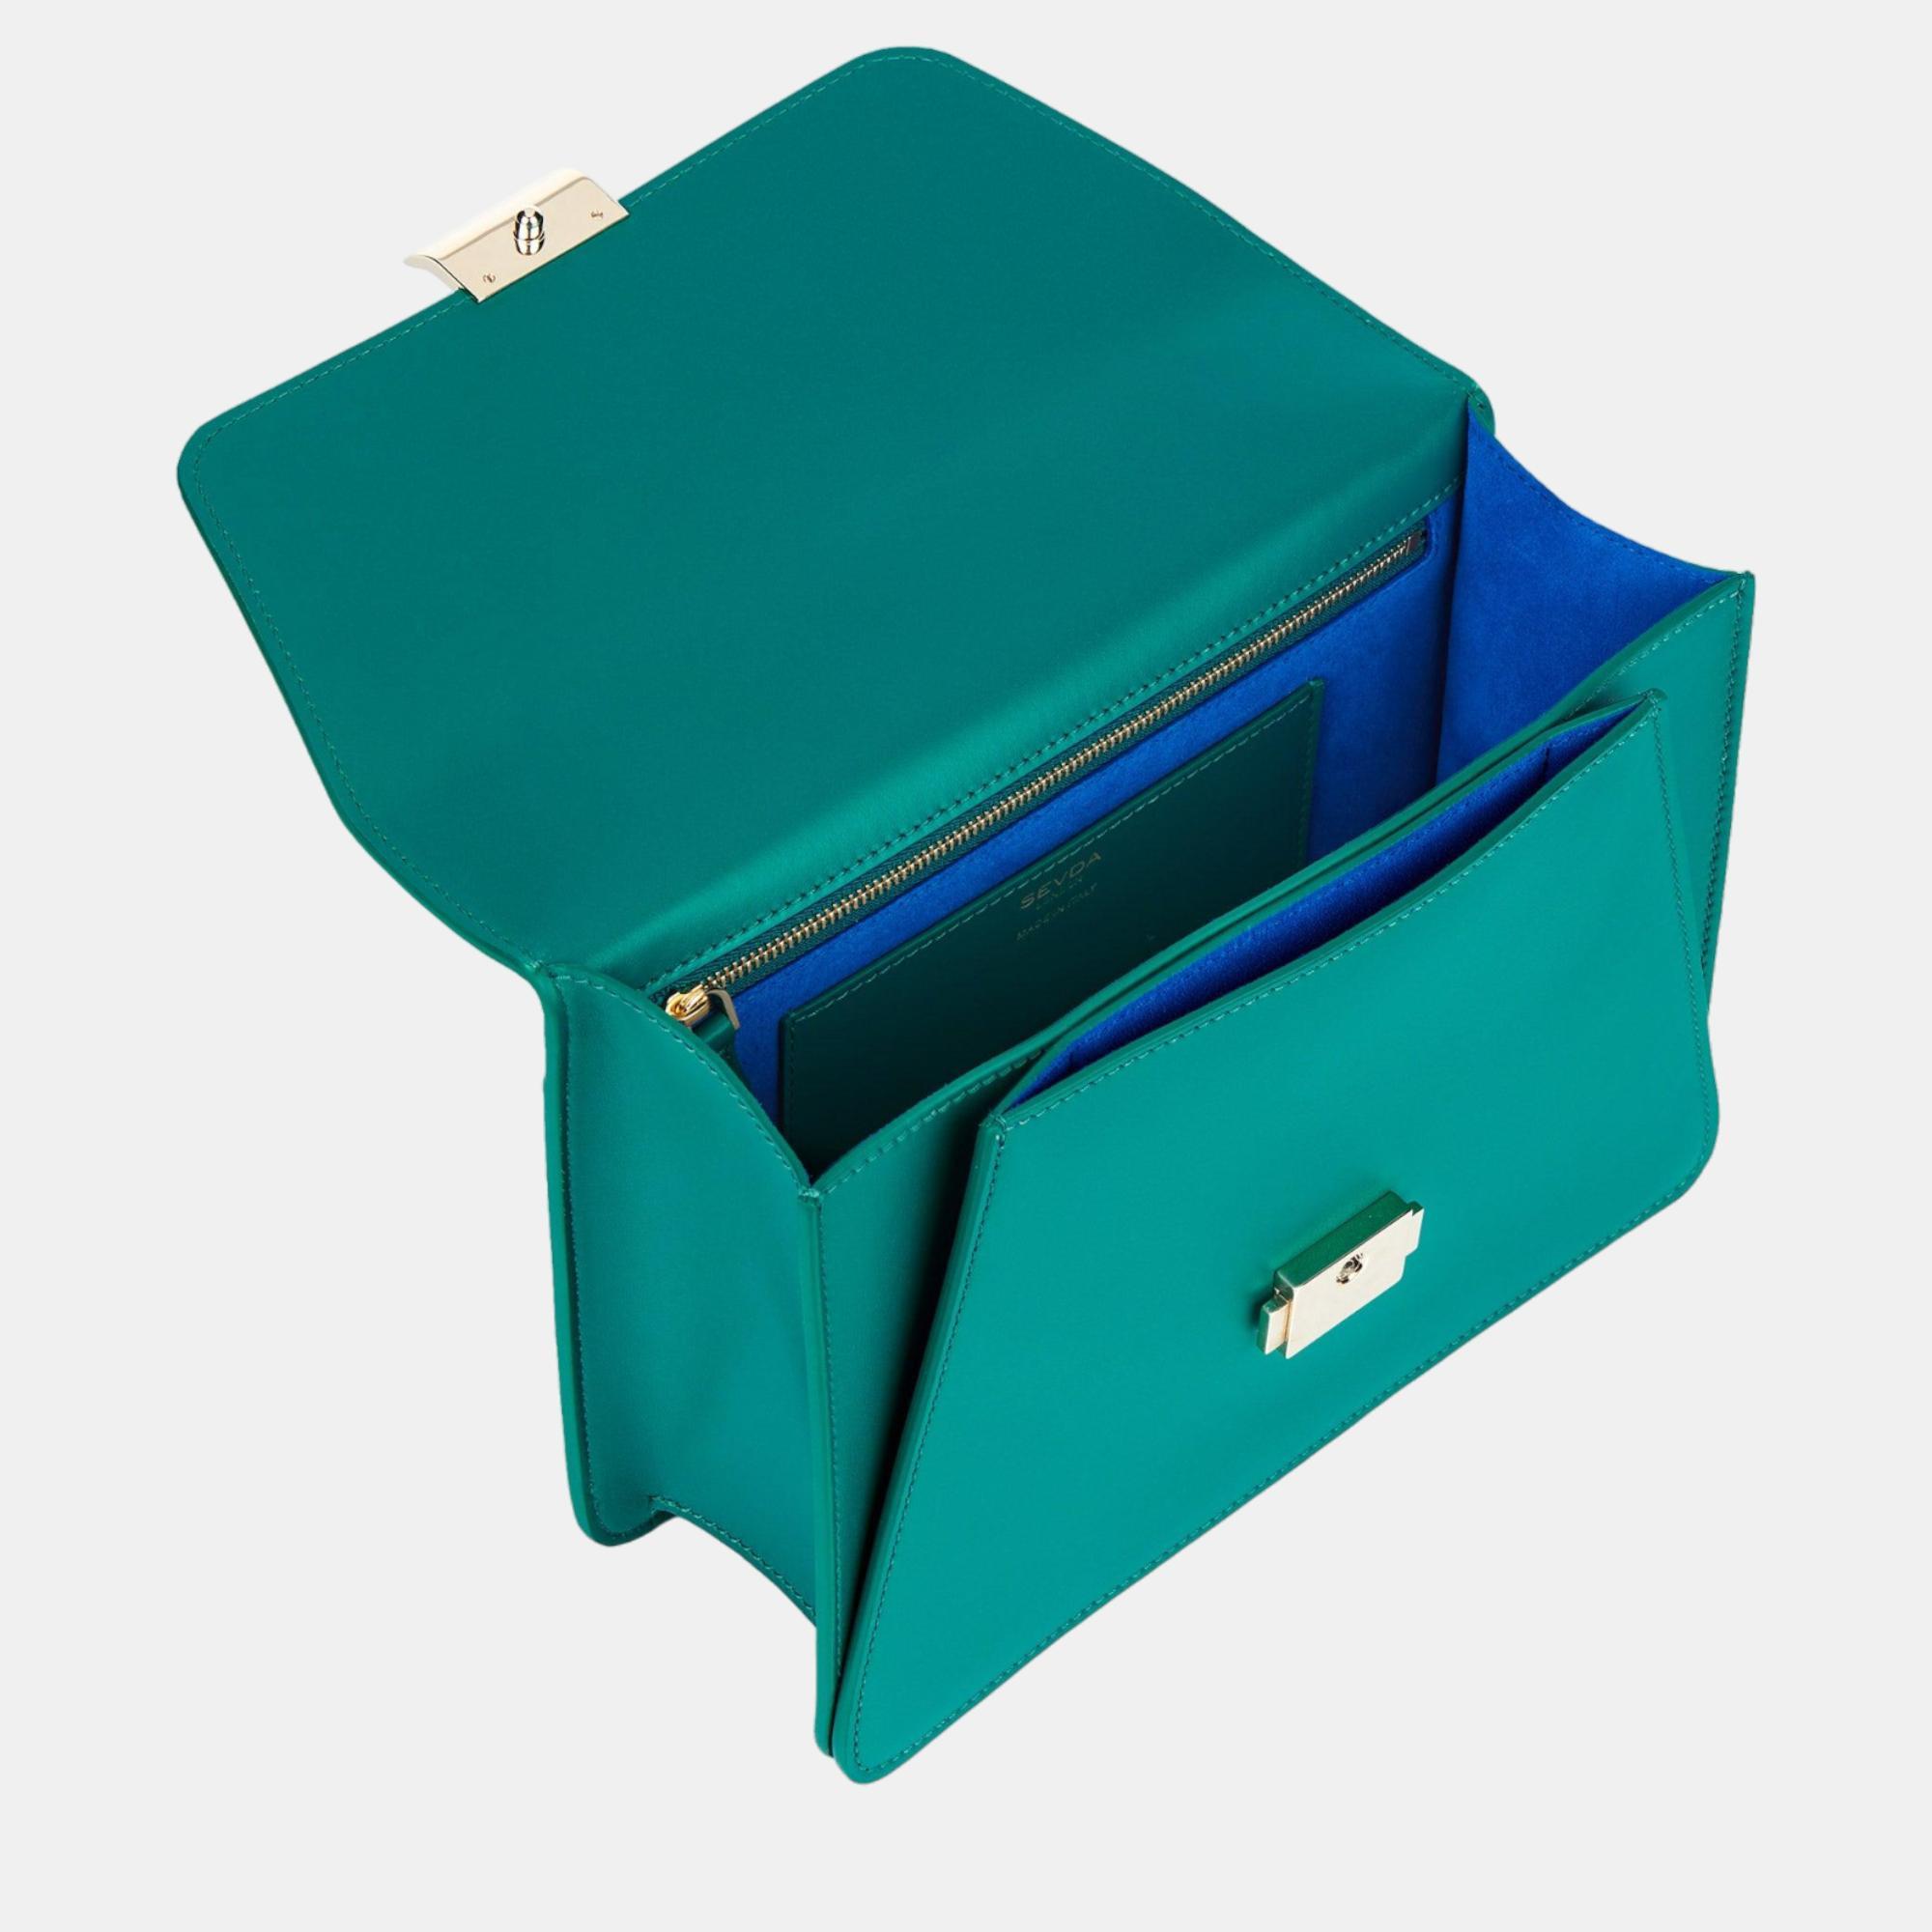 Sevda London Kate Shoulder Bag Emerald Green Shoulder Bag